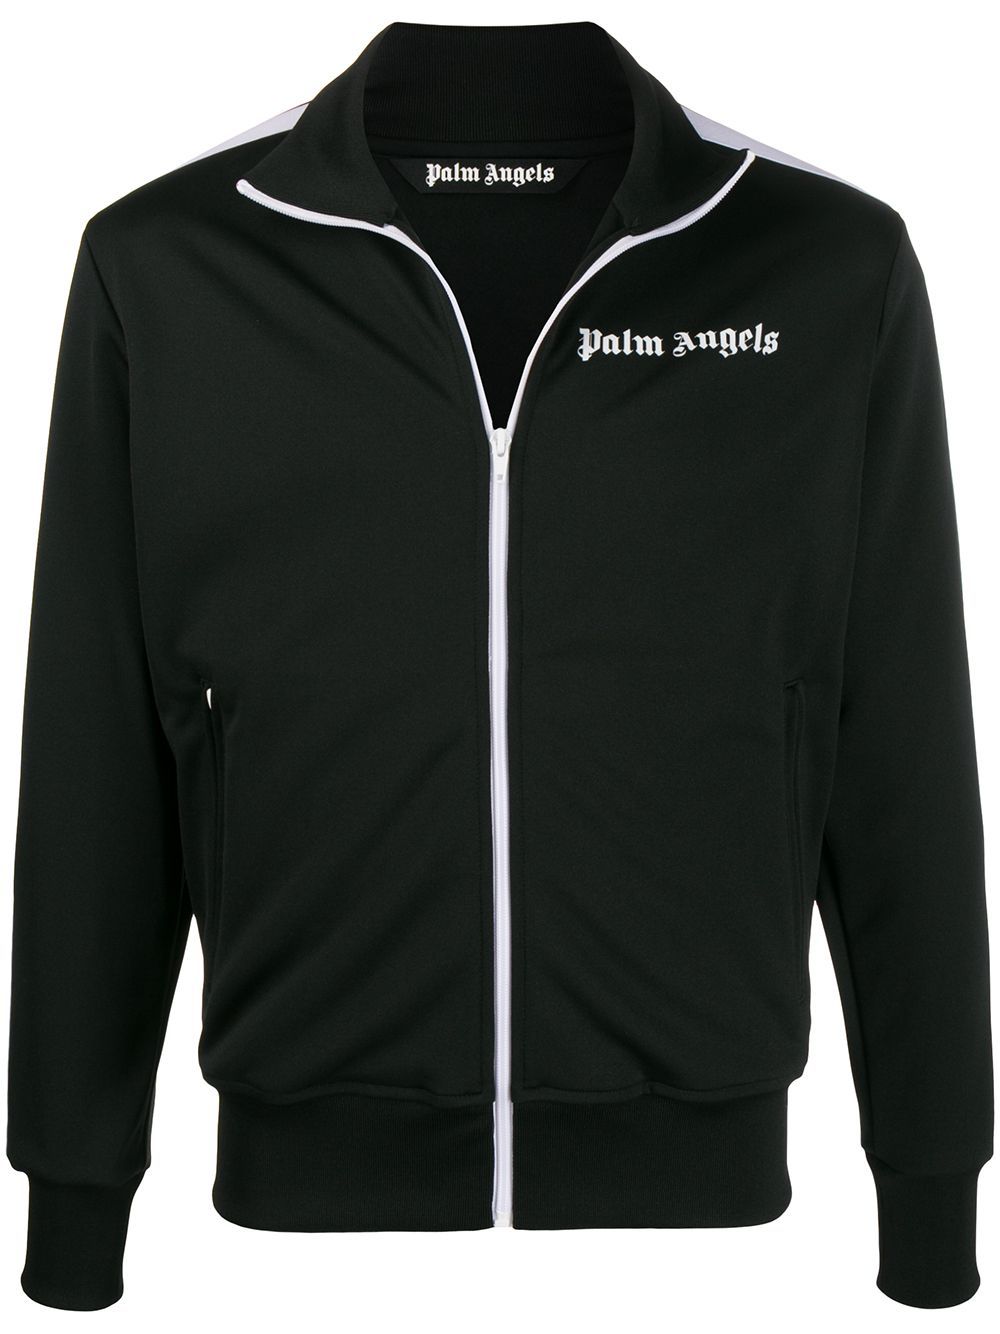 PALM ANGELS classic track jacket black/white - Maison De Fashion 